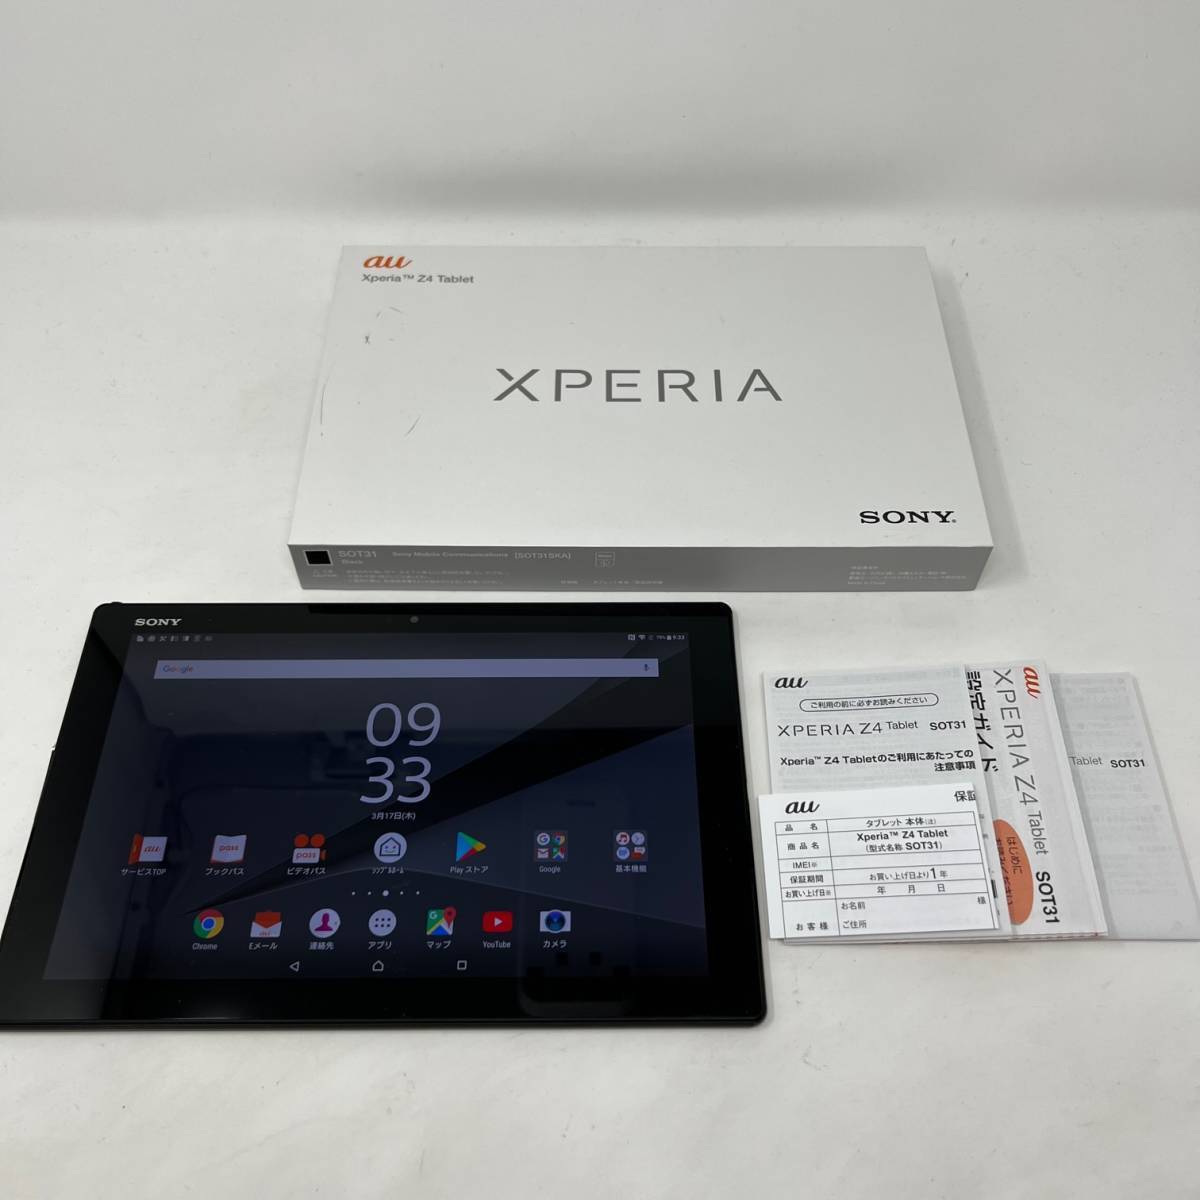 Simフリー Xperia Z4 Tablet Sot31 ブラック 32gb 判定 Sony Simロック解除済 現状 本体 売買されたオークション情報 Yahooの商品情報をアーカイブ公開 オークファン Aucfan Com